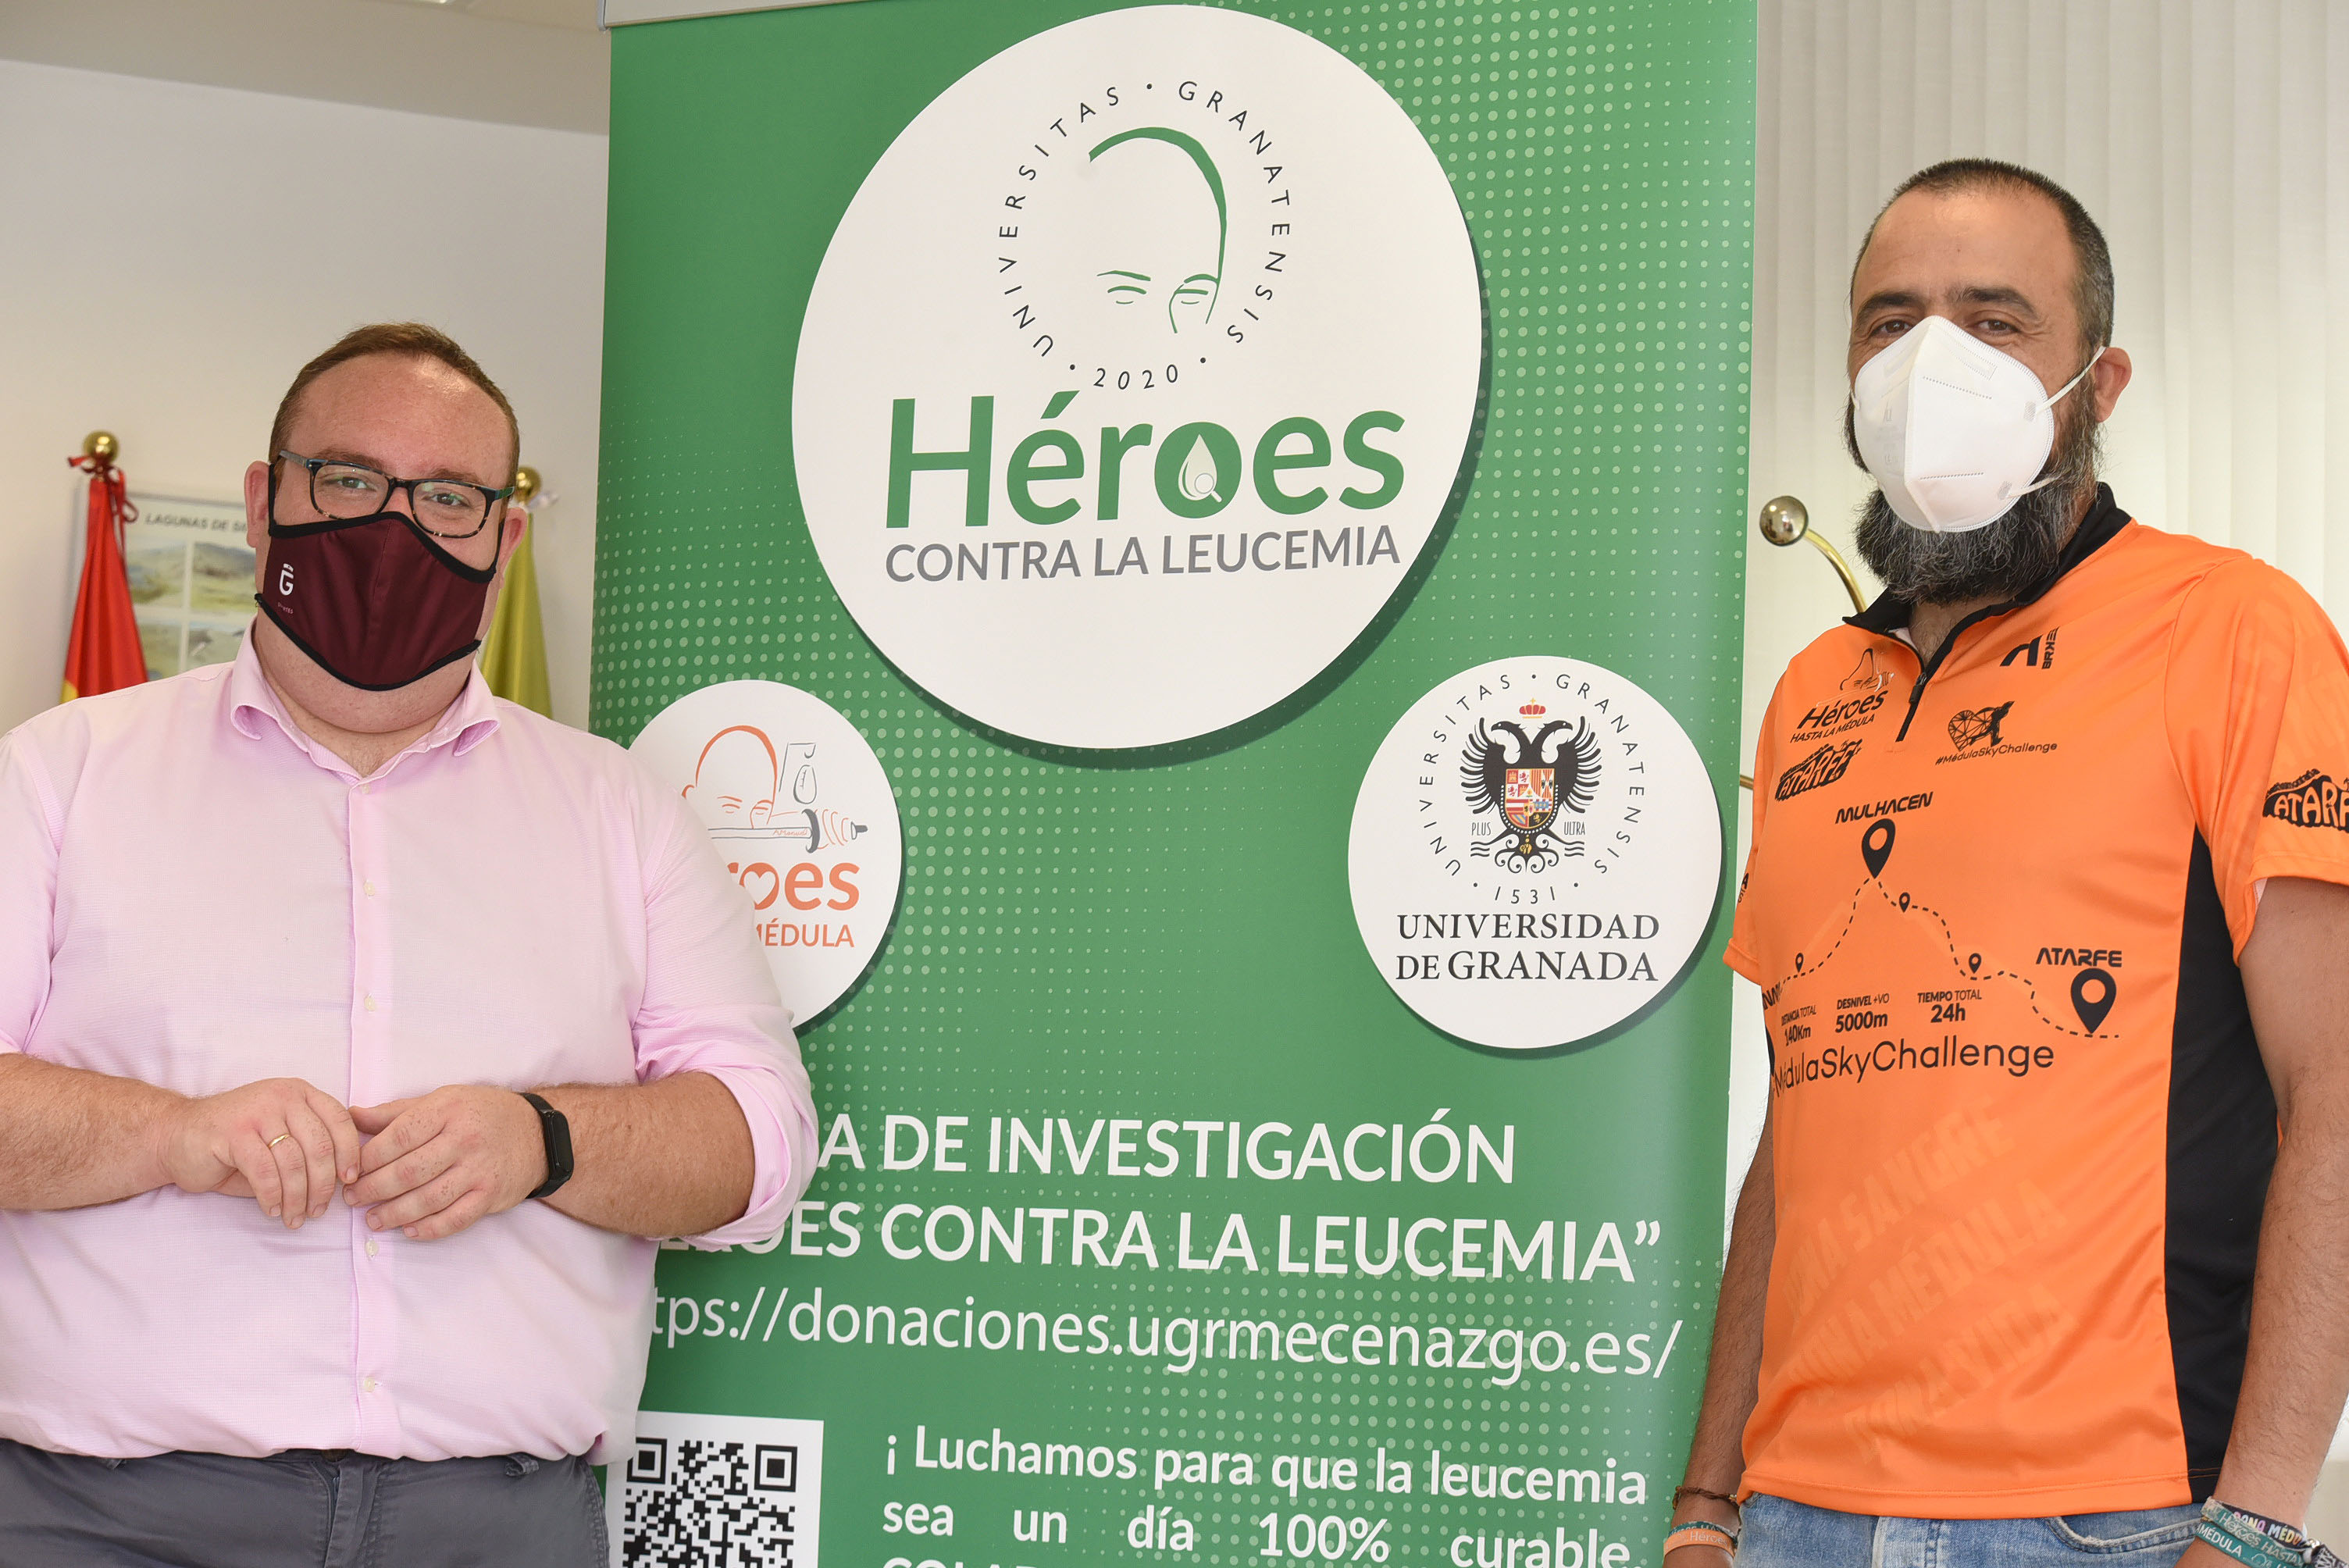 Apoyo de la Diputación al reto solidario de “Héroes contra la leucemia”